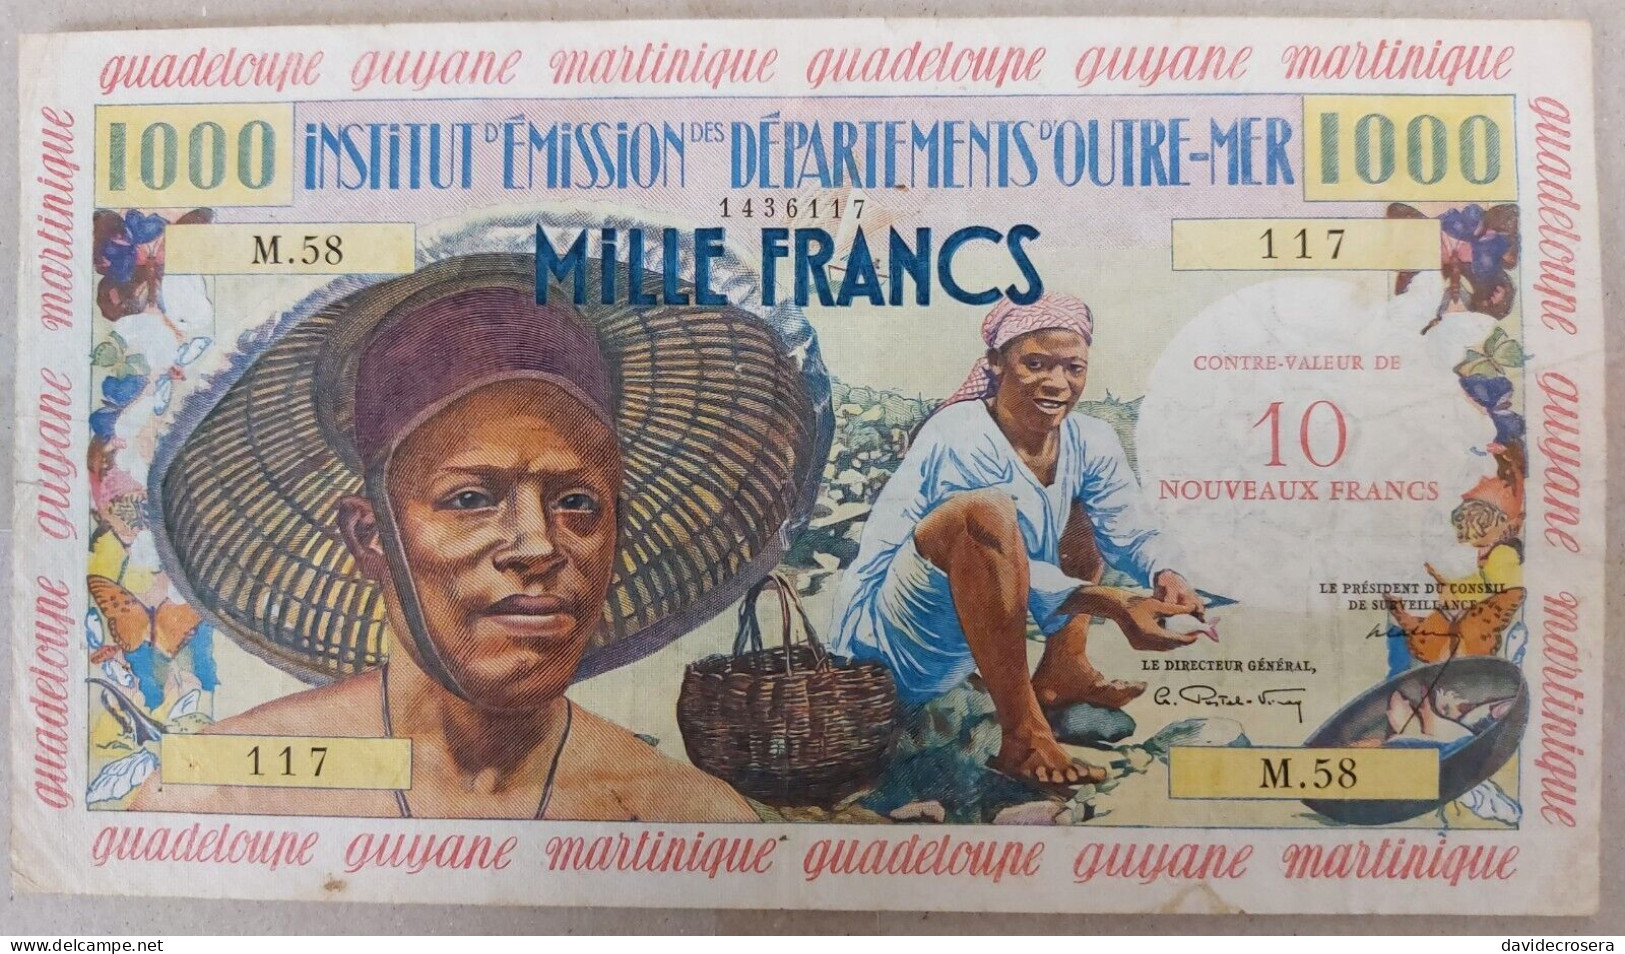 FRENCH ANTILLES 10 NOUVEAUX FRANCS ON 1000 FRANCS 1961 PICK 2 - Autres - Amérique